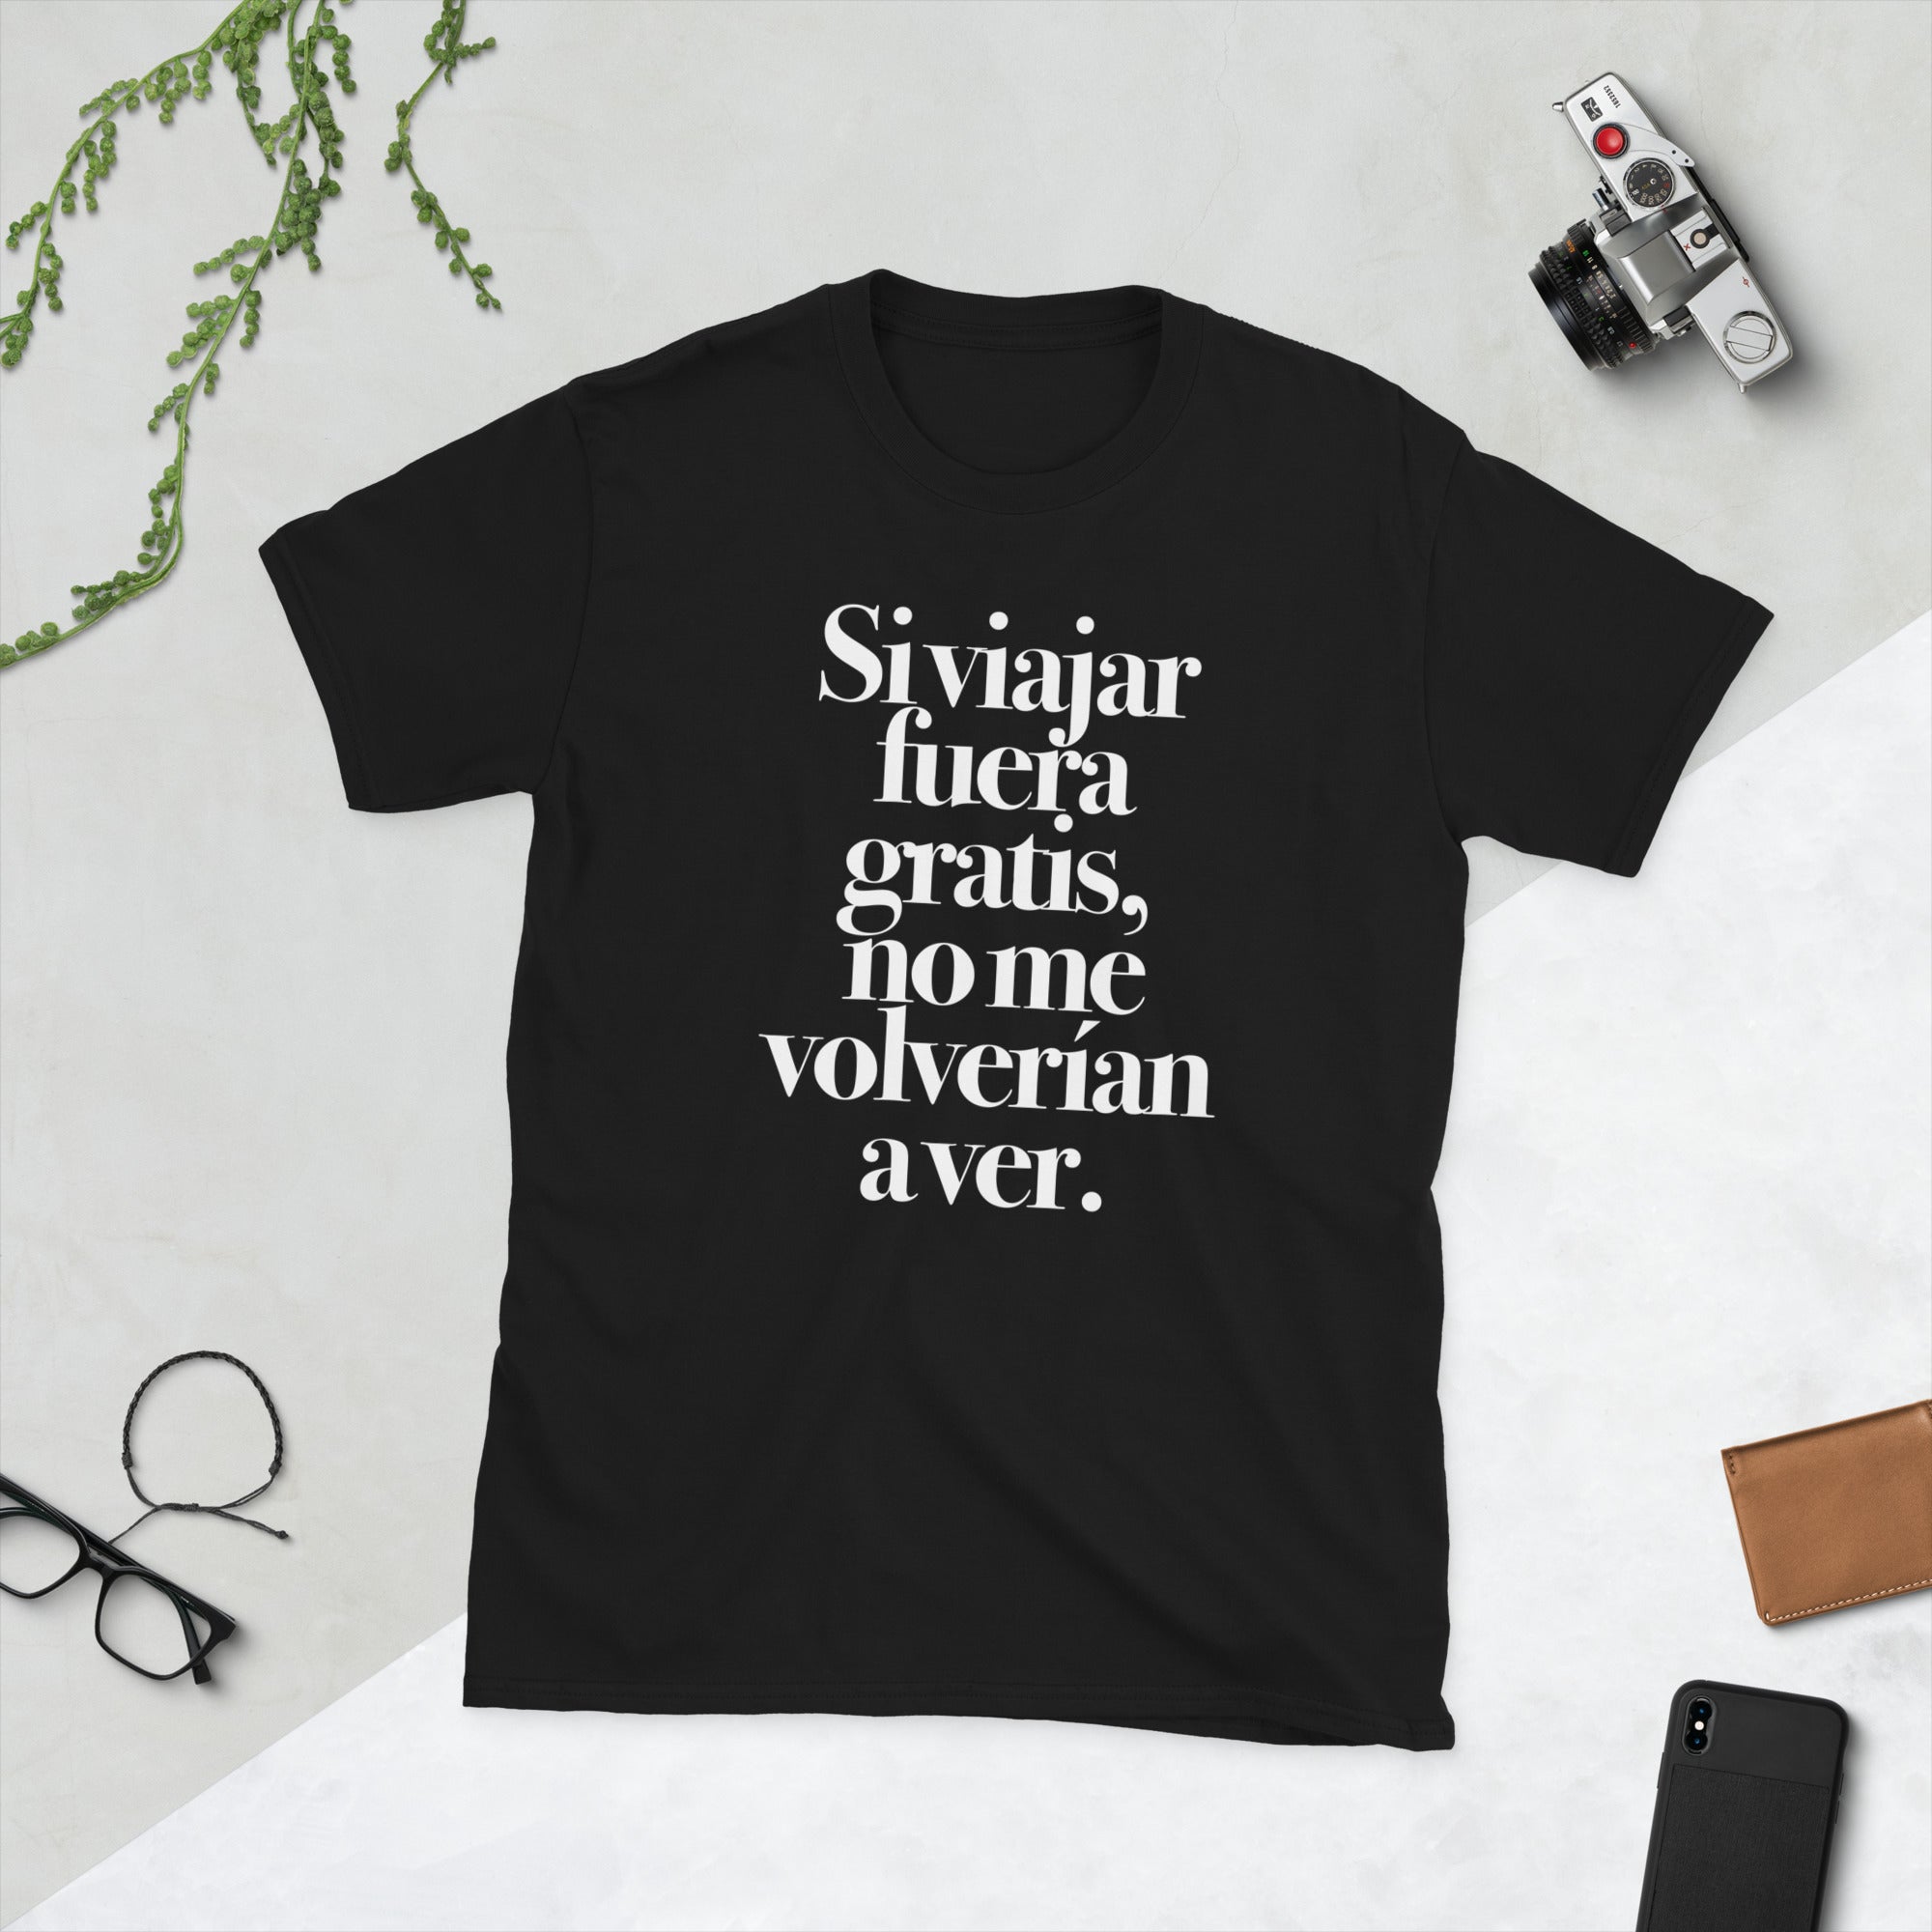 T-Shirt: Si viajar fuera gratis